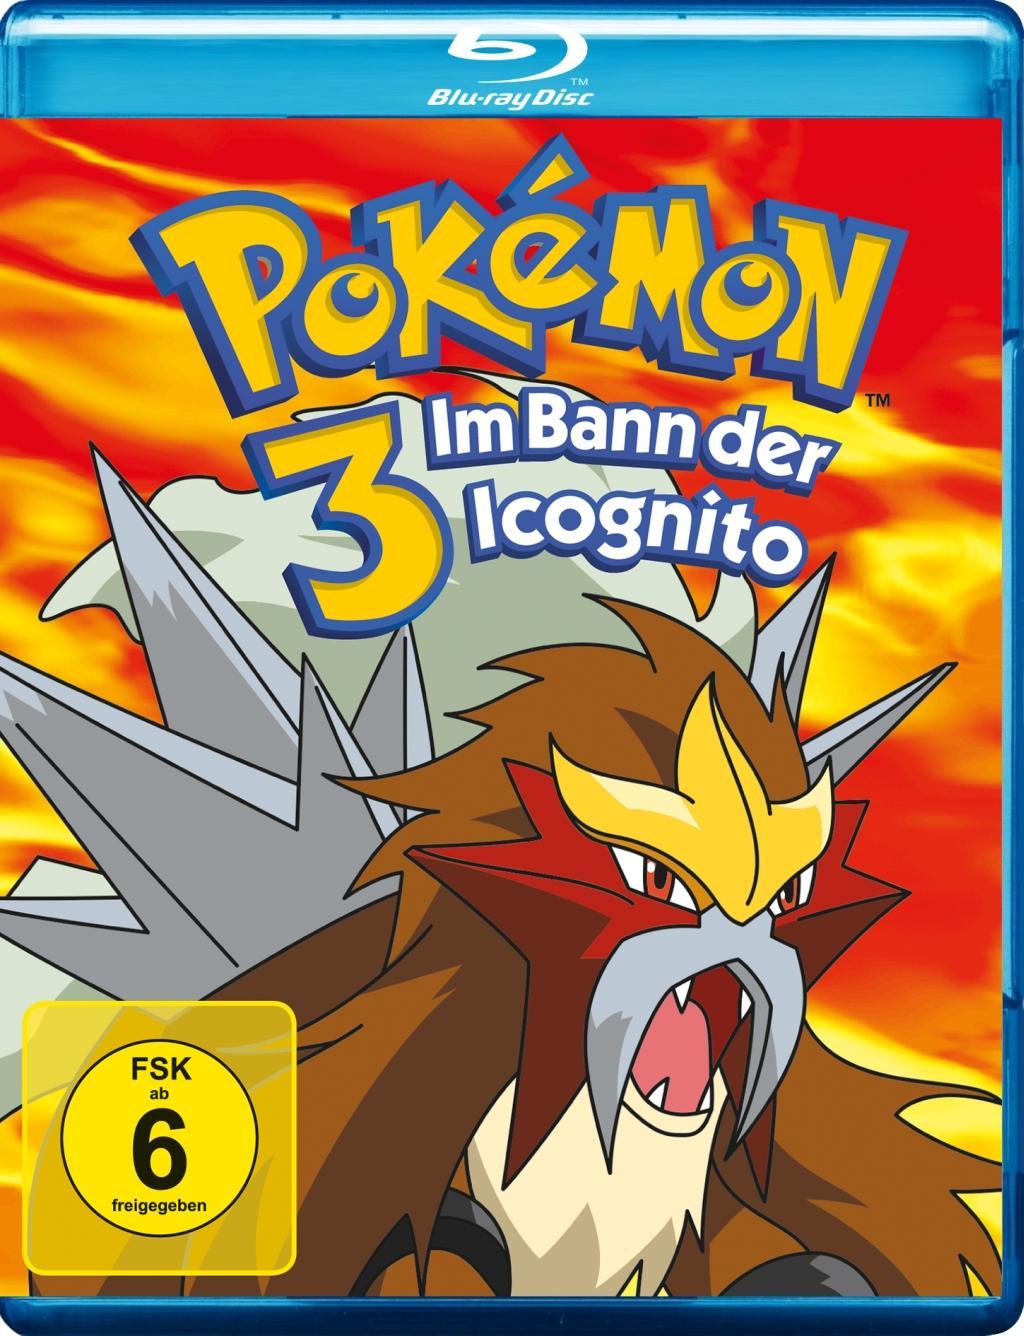 Pokémon 3 - Im Bann der Icognito